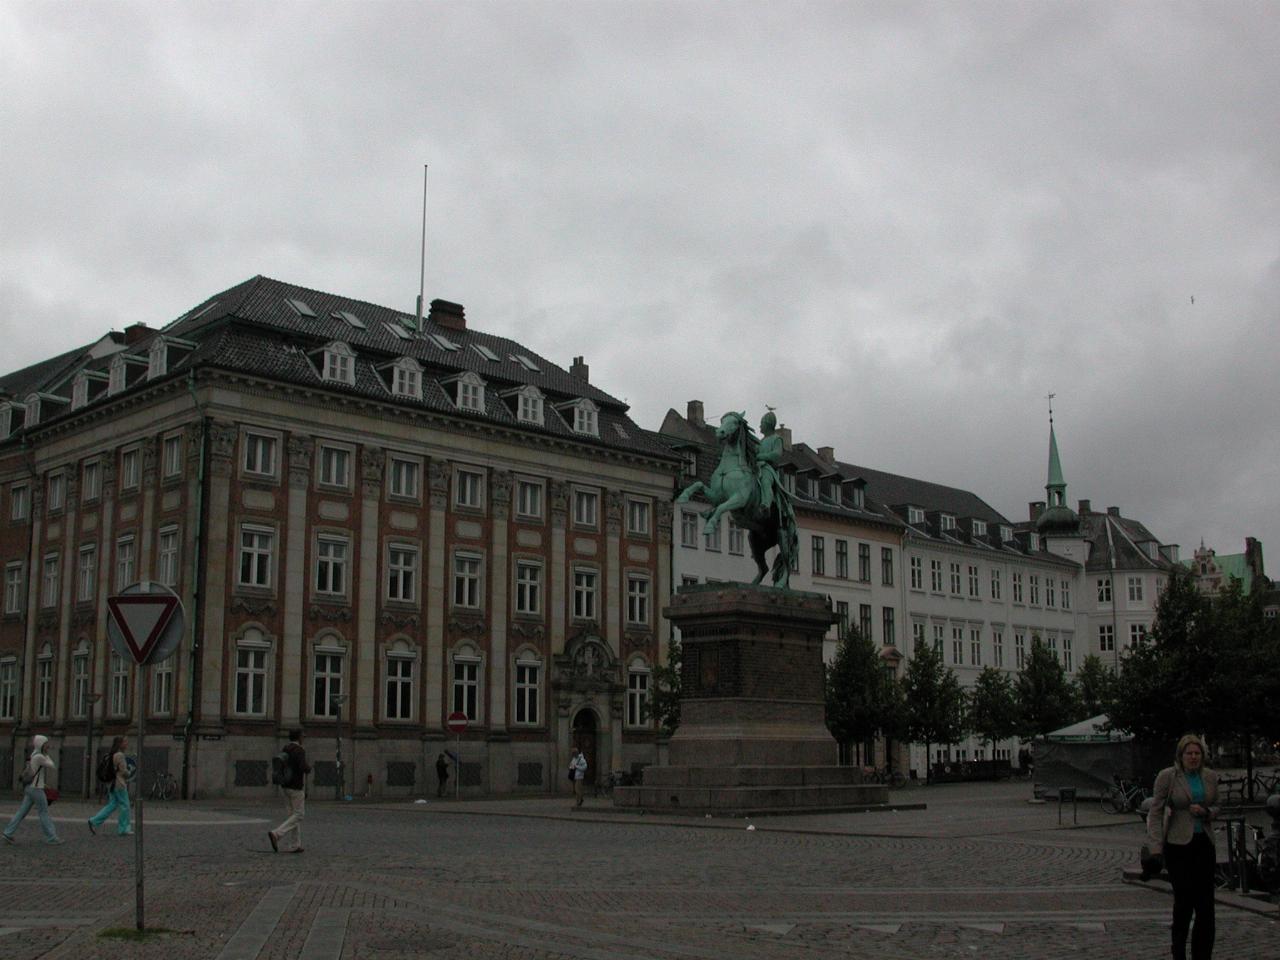 KPLU Viking Jazz: Statue of St. Absalon, founder of Copenhagen in Højbro Plads